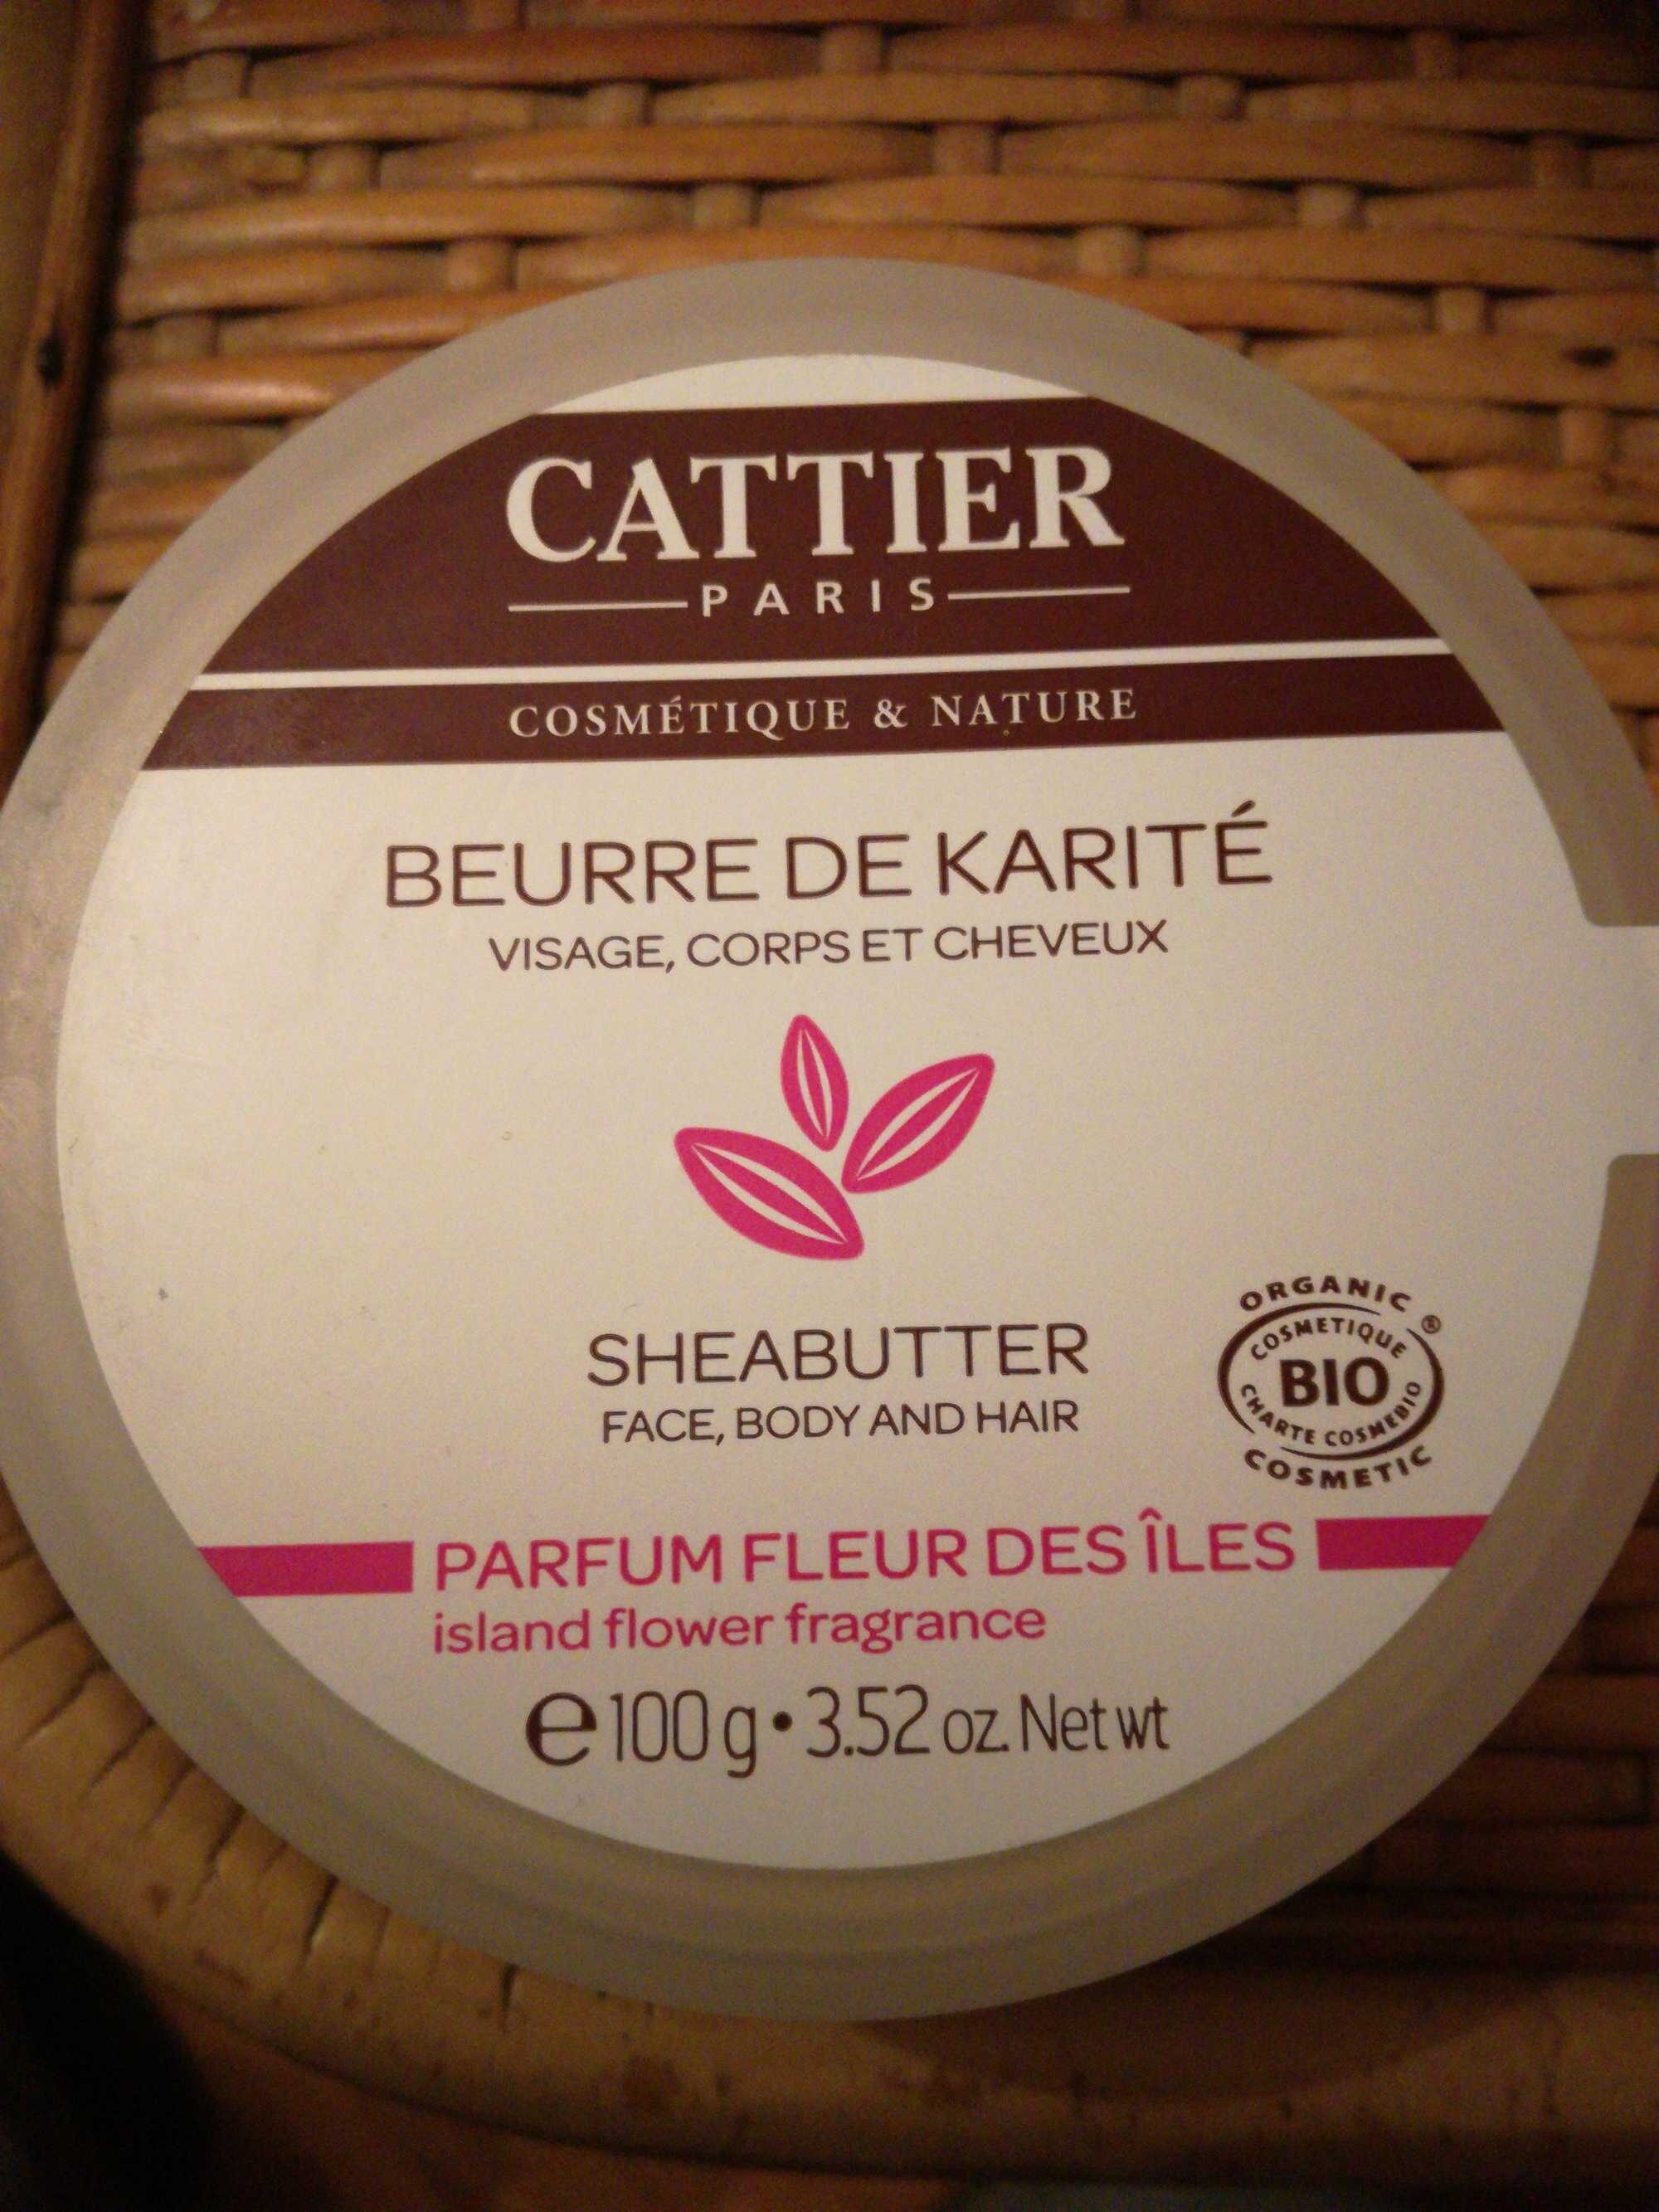 Beurre de karité parfum fleur des îles - Produkt - fr